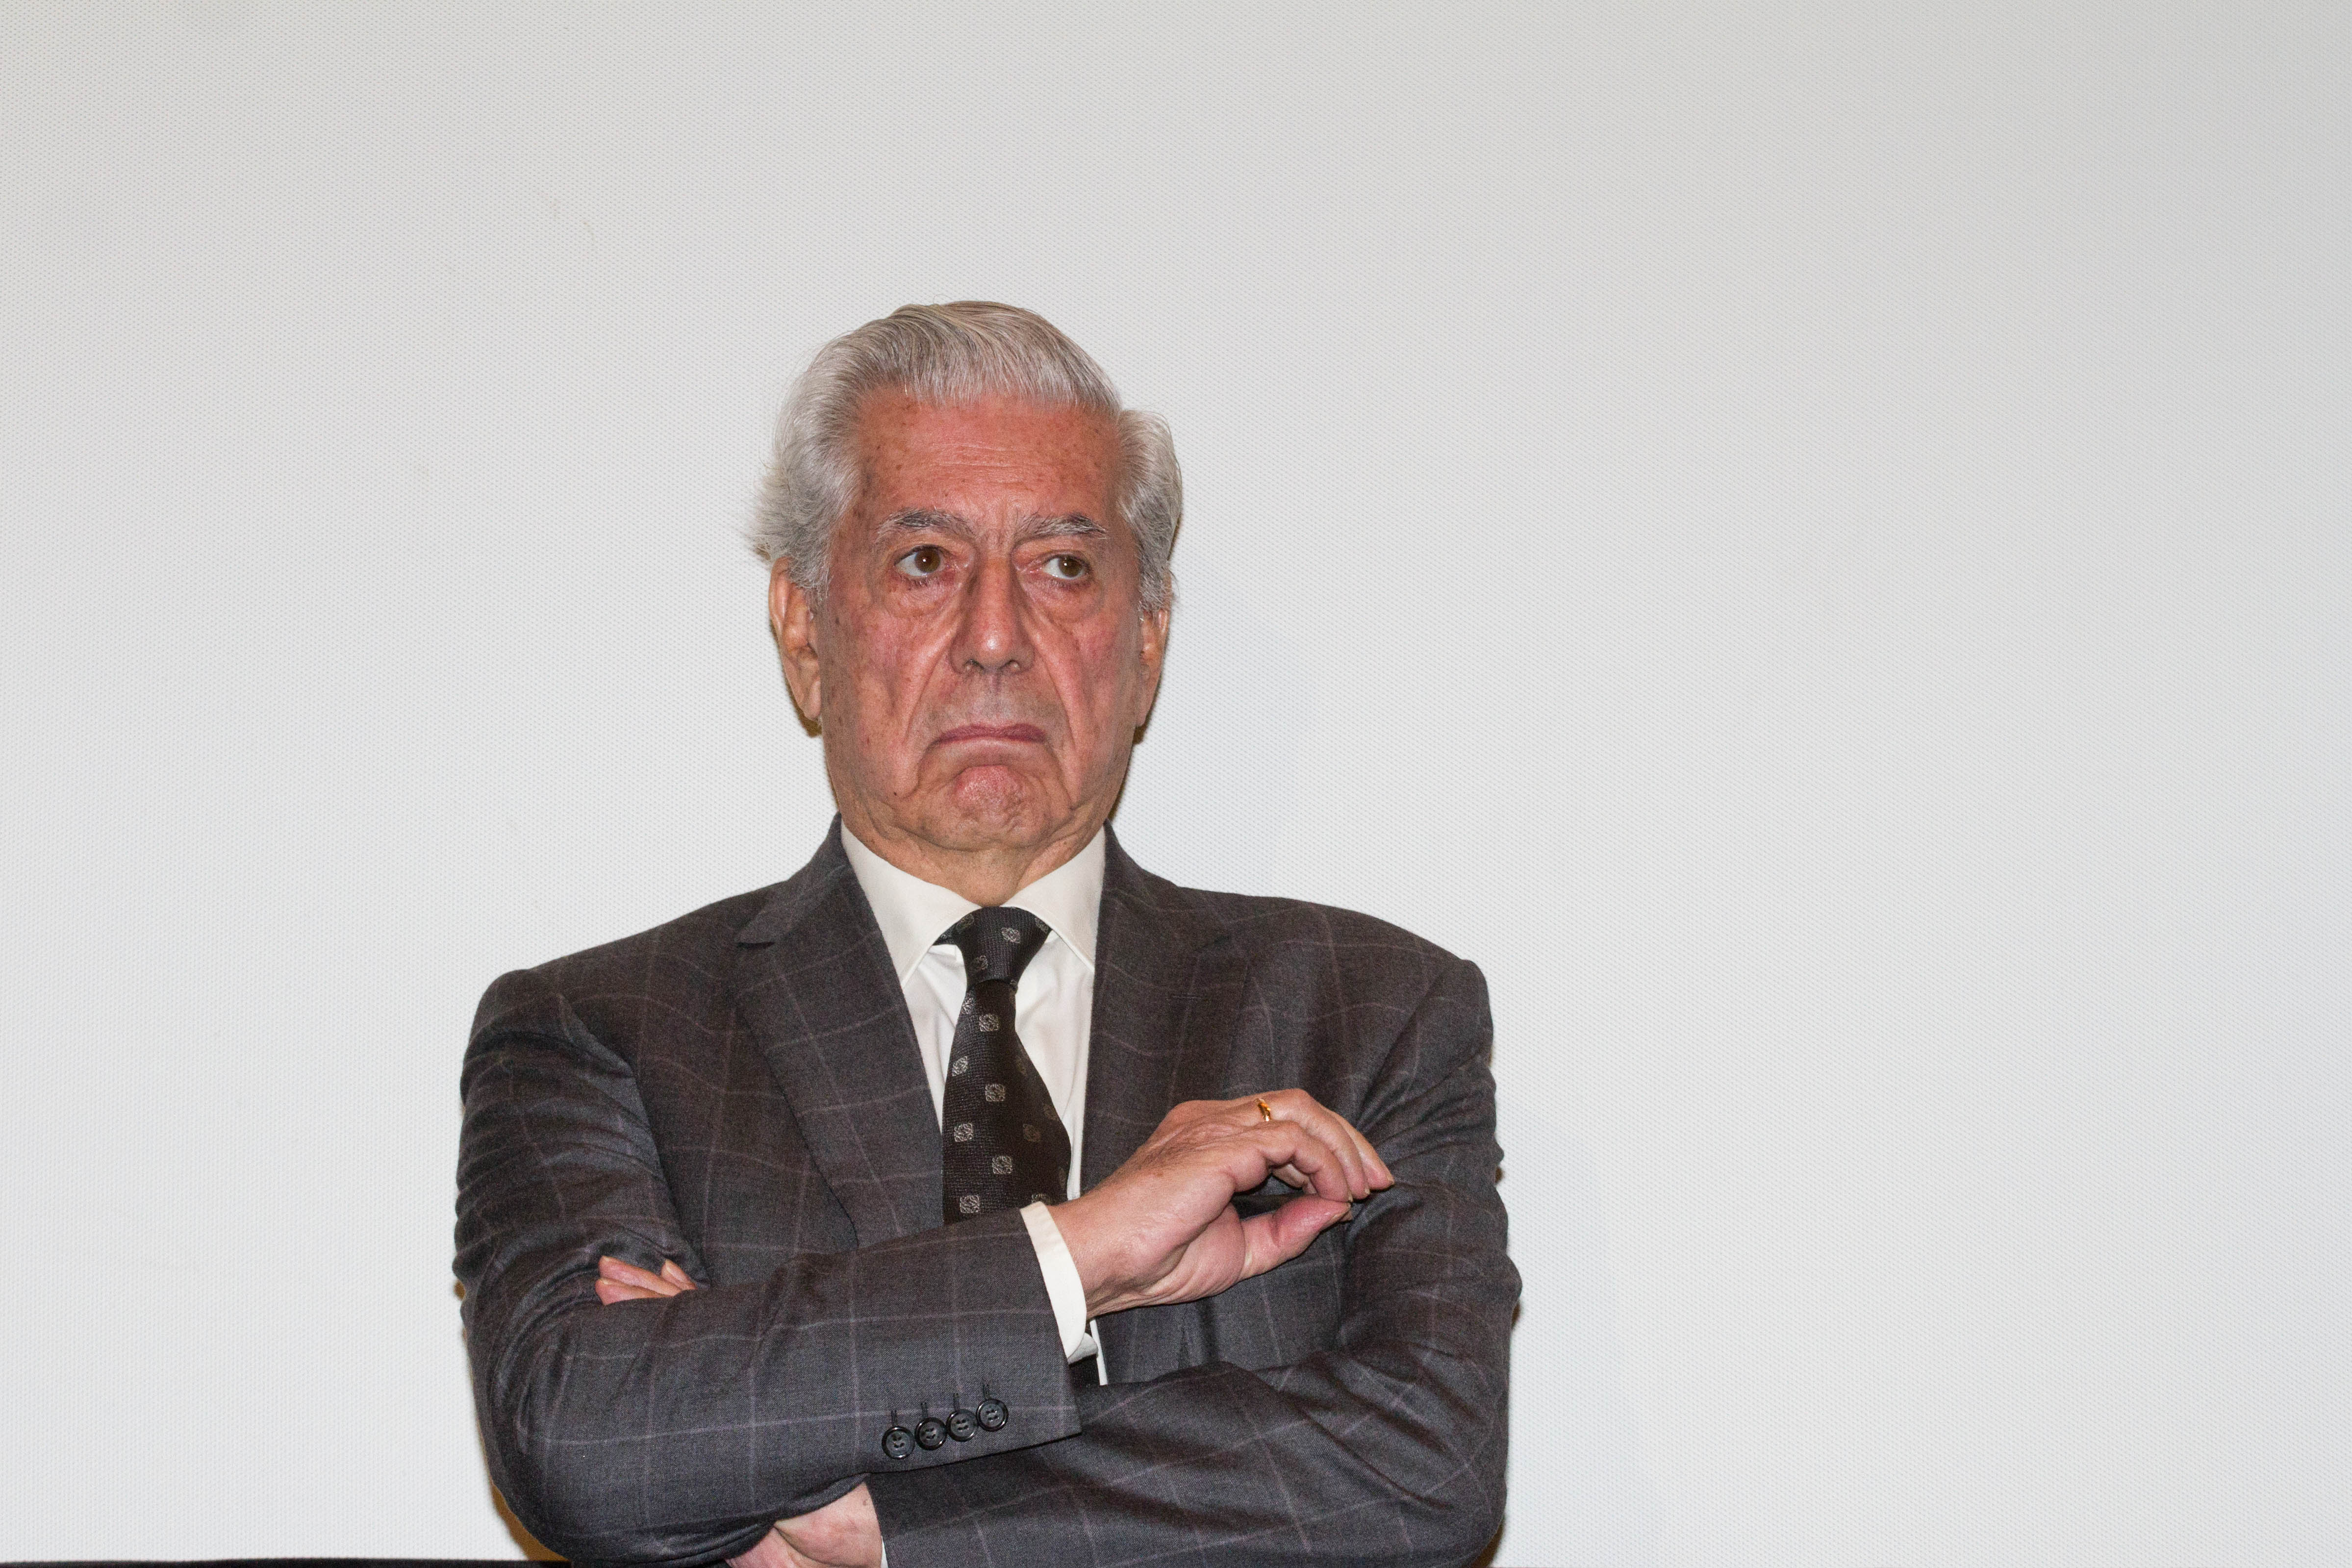 MÉXICO, D.F., 27NOVIEMBRE2013.- El escritor peruano Mario Vargas Llosa, premio Nobel de Literatura, inauguró el ciclo "Mario Vargas Llosa en el Cine", en la Cineteca Nacional. FOTO: ISAAC ESQUIVEL /CUARTOSCURO.COM